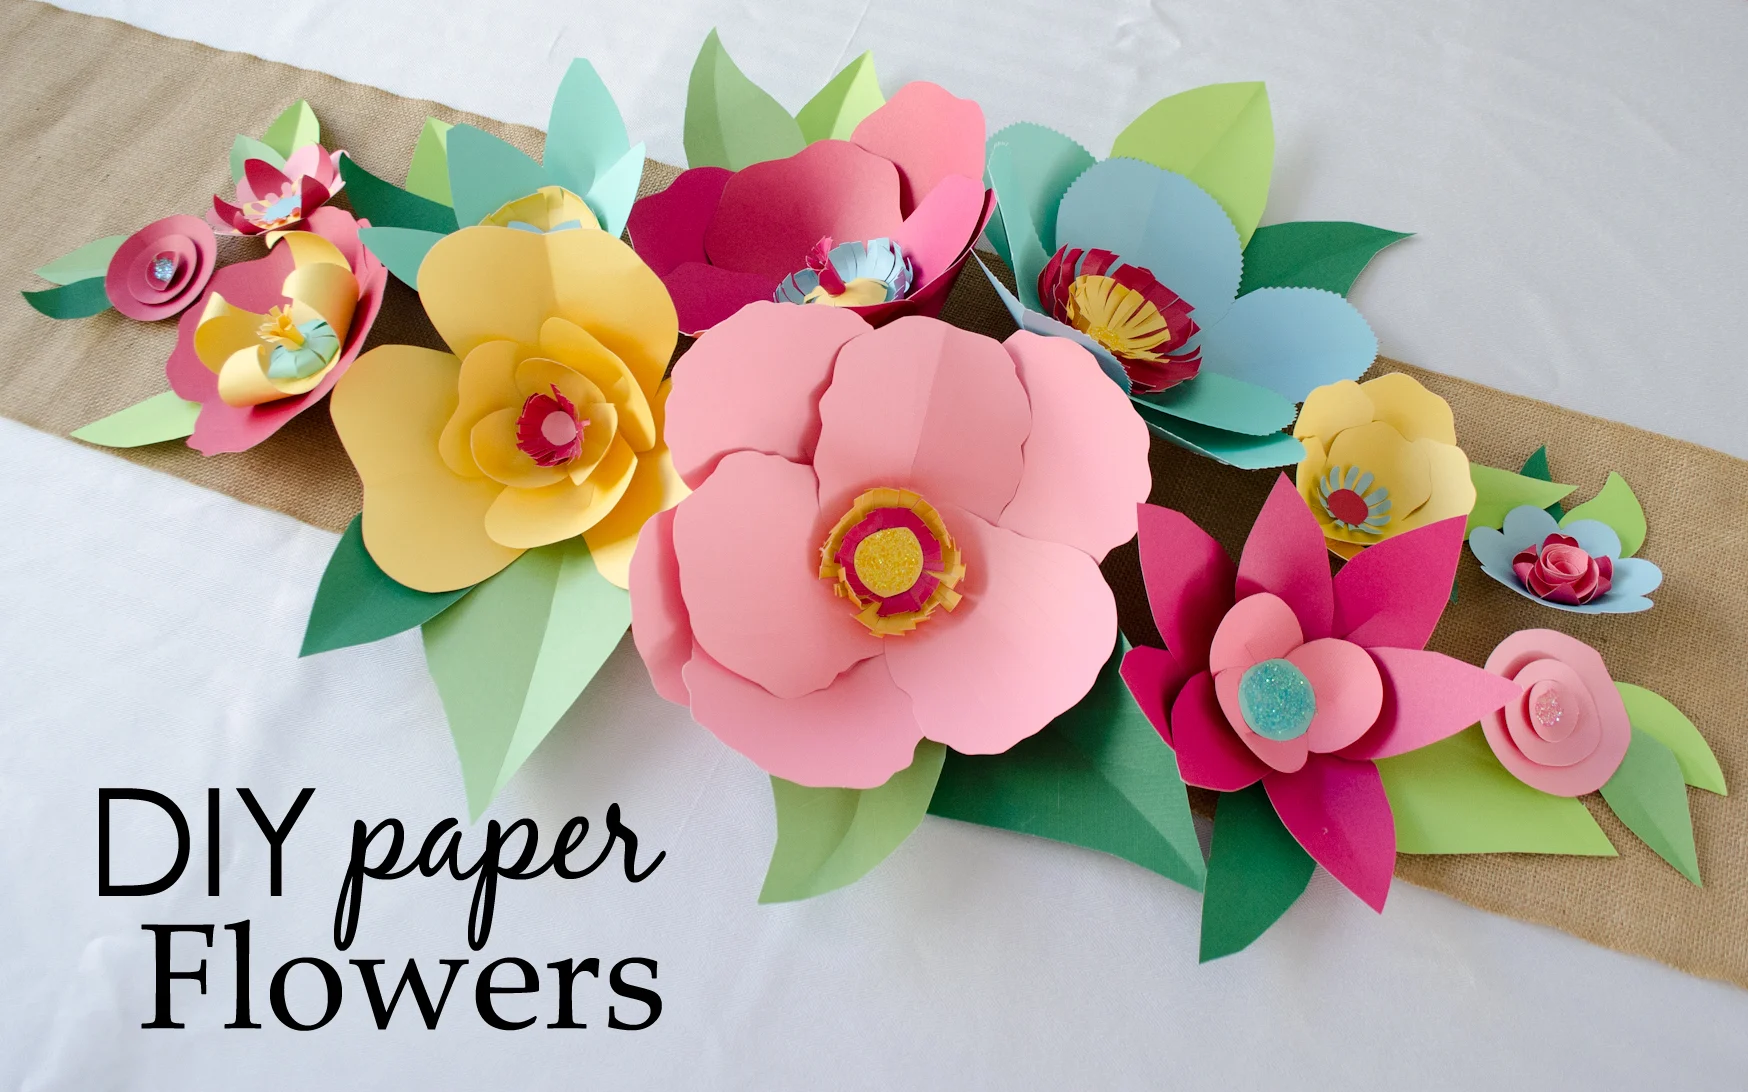 How to Make Paper Flowers, How to Make Paper Flowers